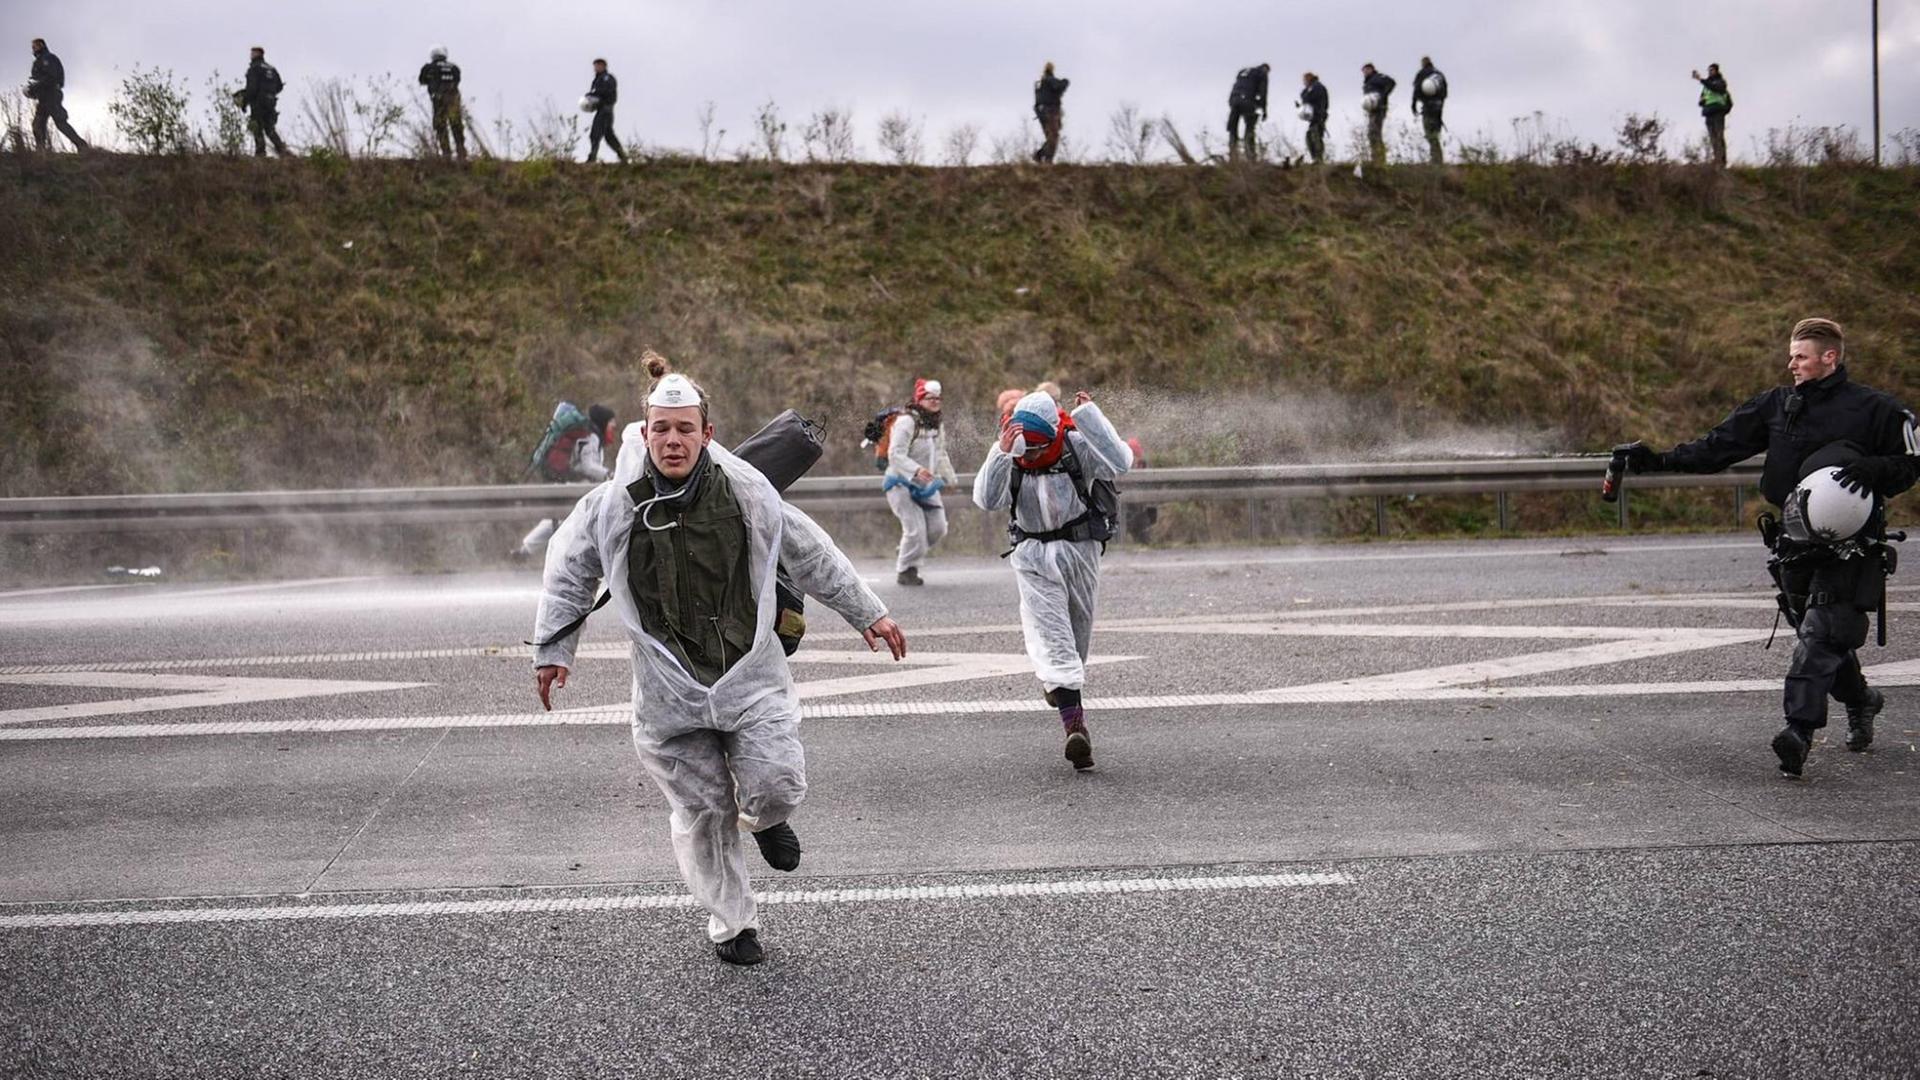 Aktivisten von "Ende Gelände" treffen in der Nähe des Tagebaus Hambach auf Polizisten, die Wasserwerfer und Pfefferspray gegen die Demonstranten einsetzen.